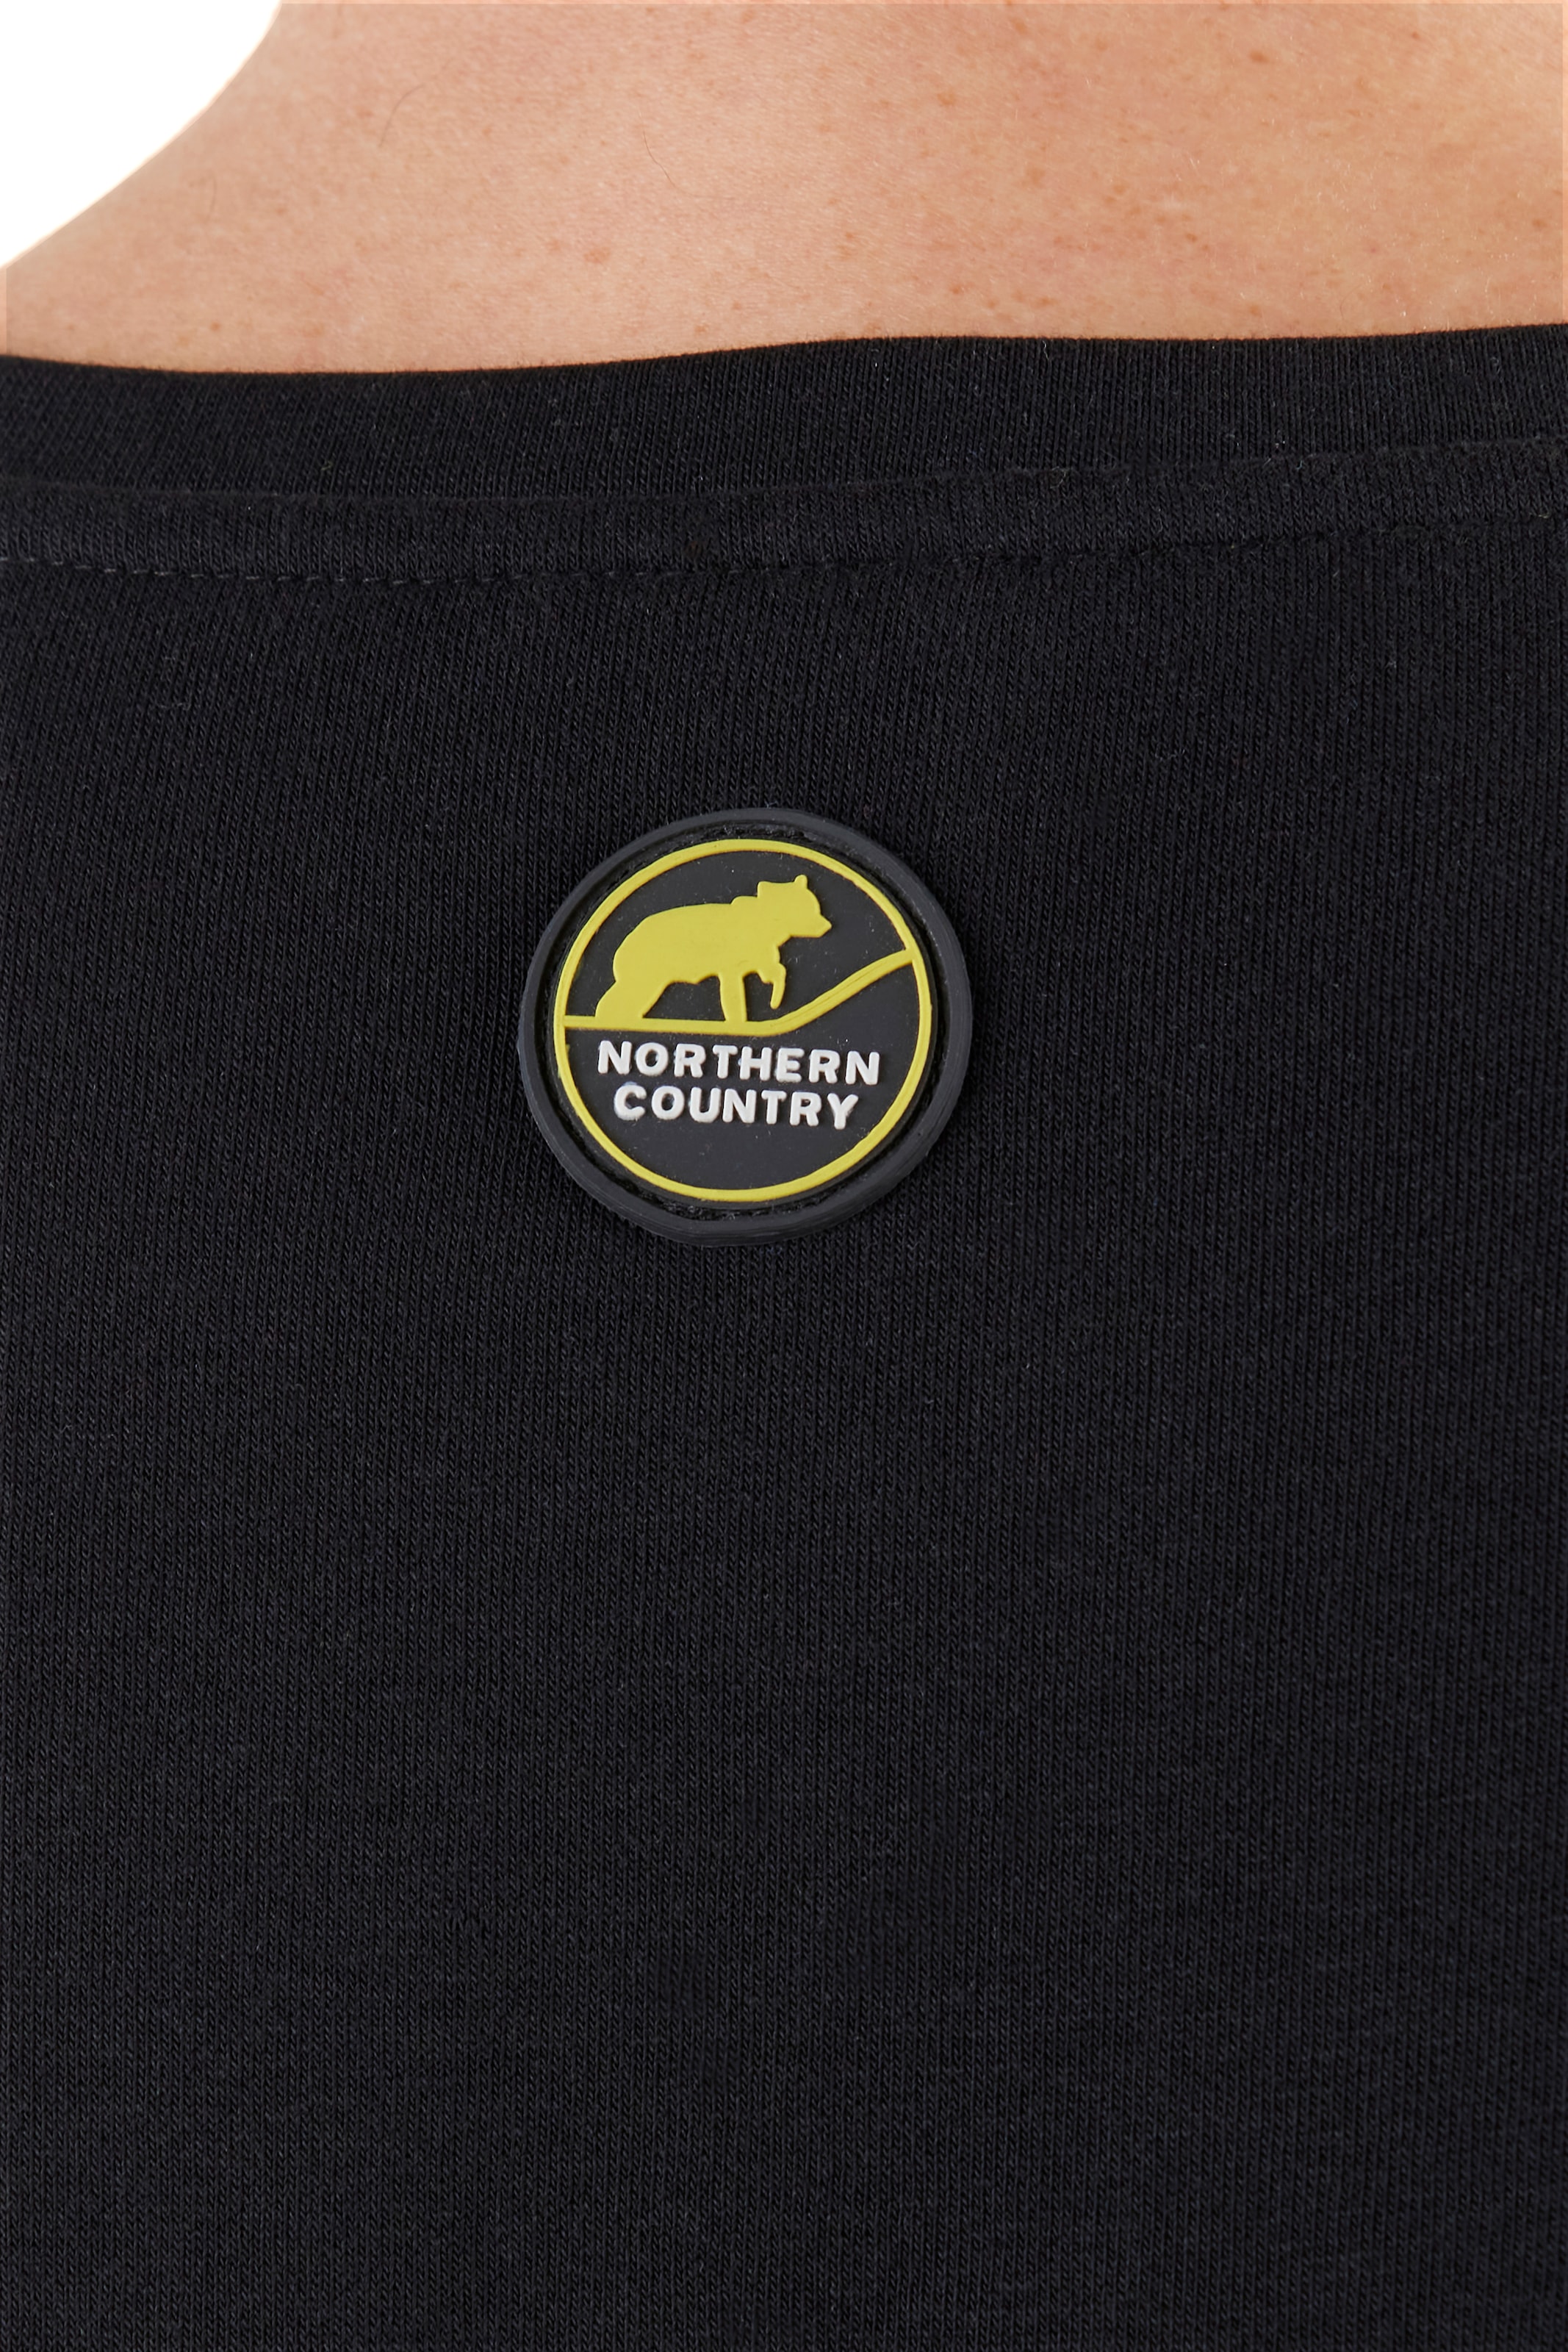 Arbeiten, Country Northern bei leichte shoppen OTTO Sweatshirt, online zum Sweatware Passform, klassische